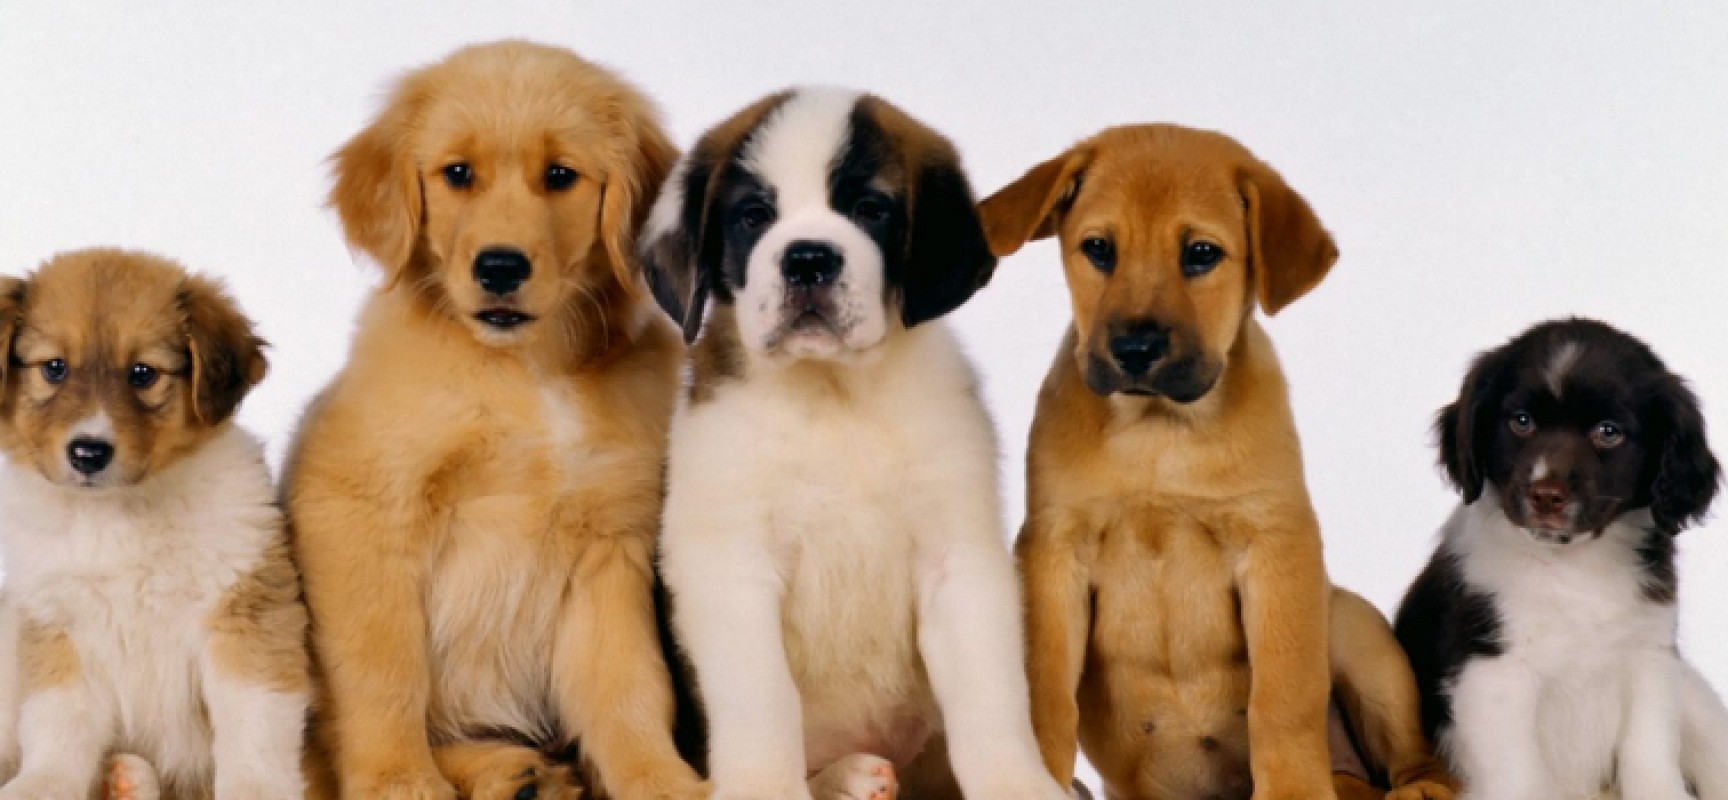 Interact e Rotary Bisceglie, prima edizione di “Una notte da cani”, l’evento dedicato agli amici a quattro zampe